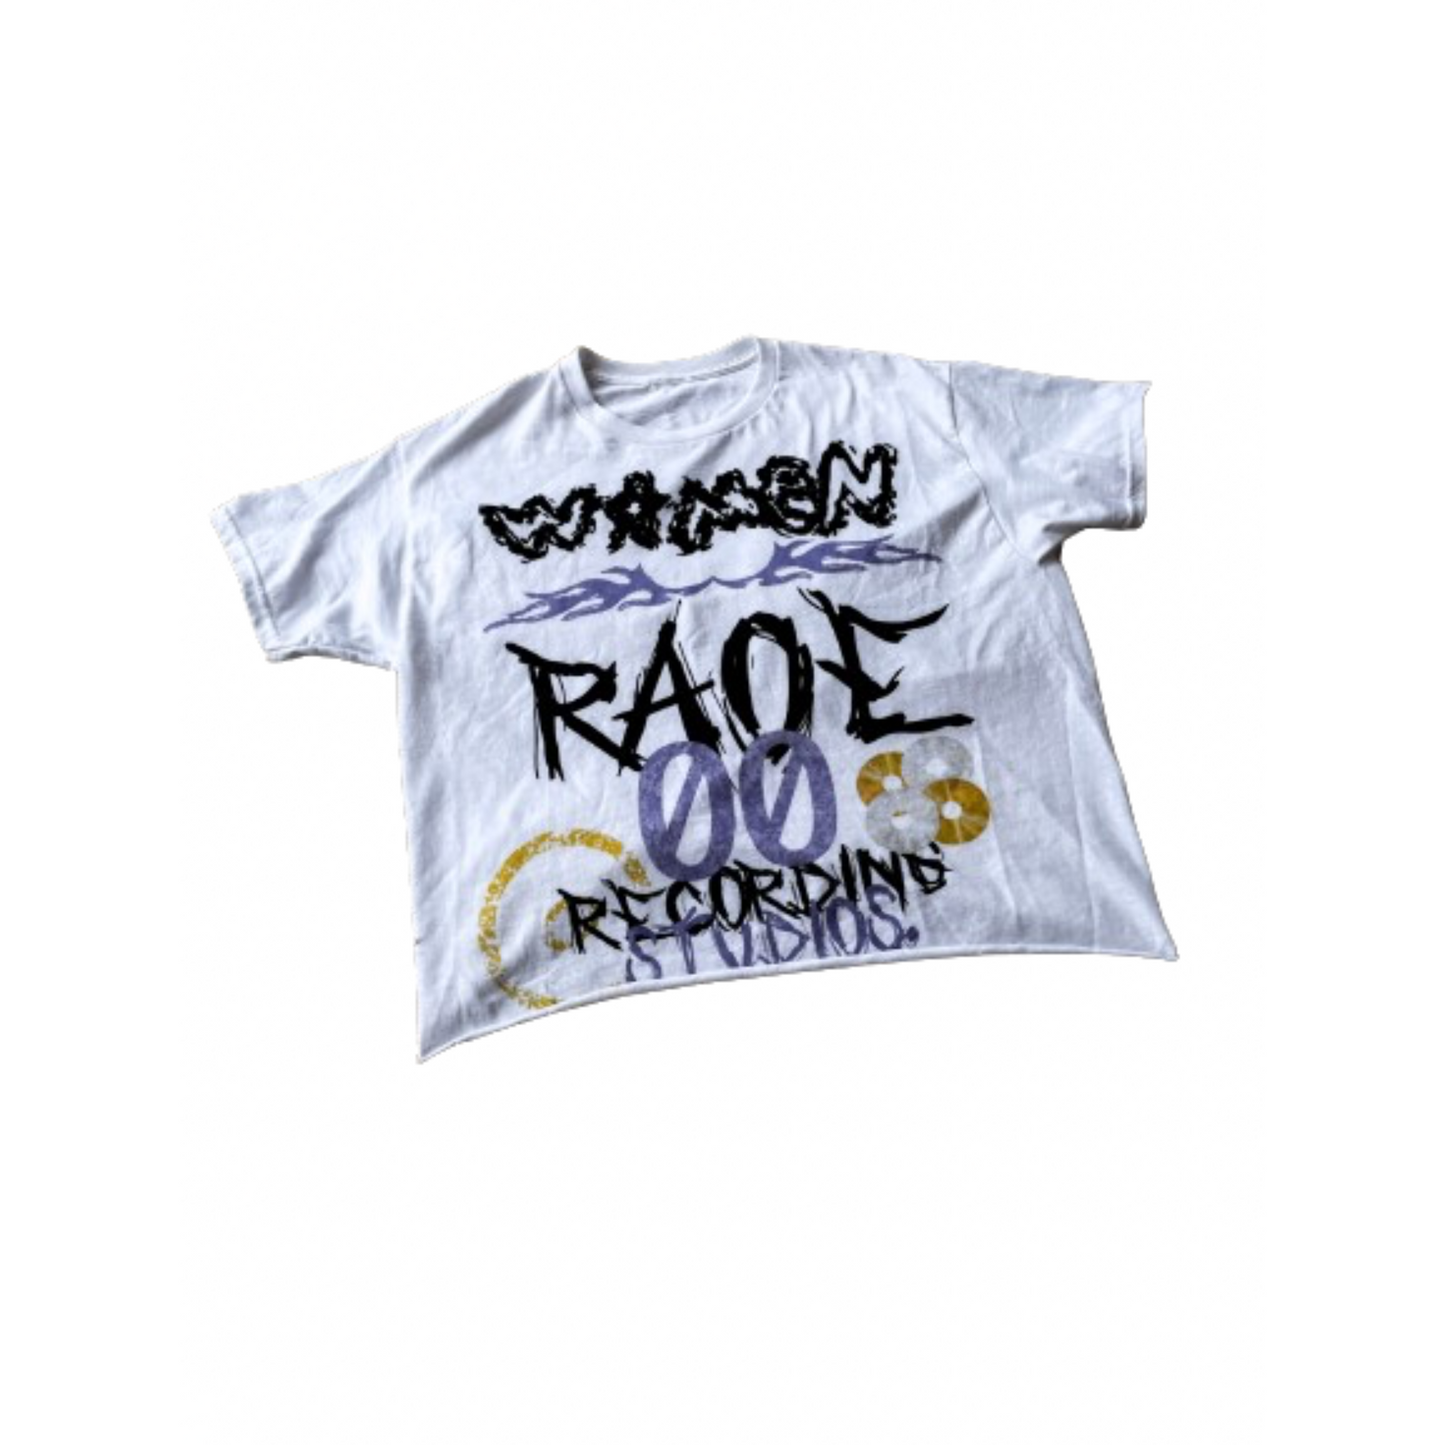 “Recording Studios” T-Shirt